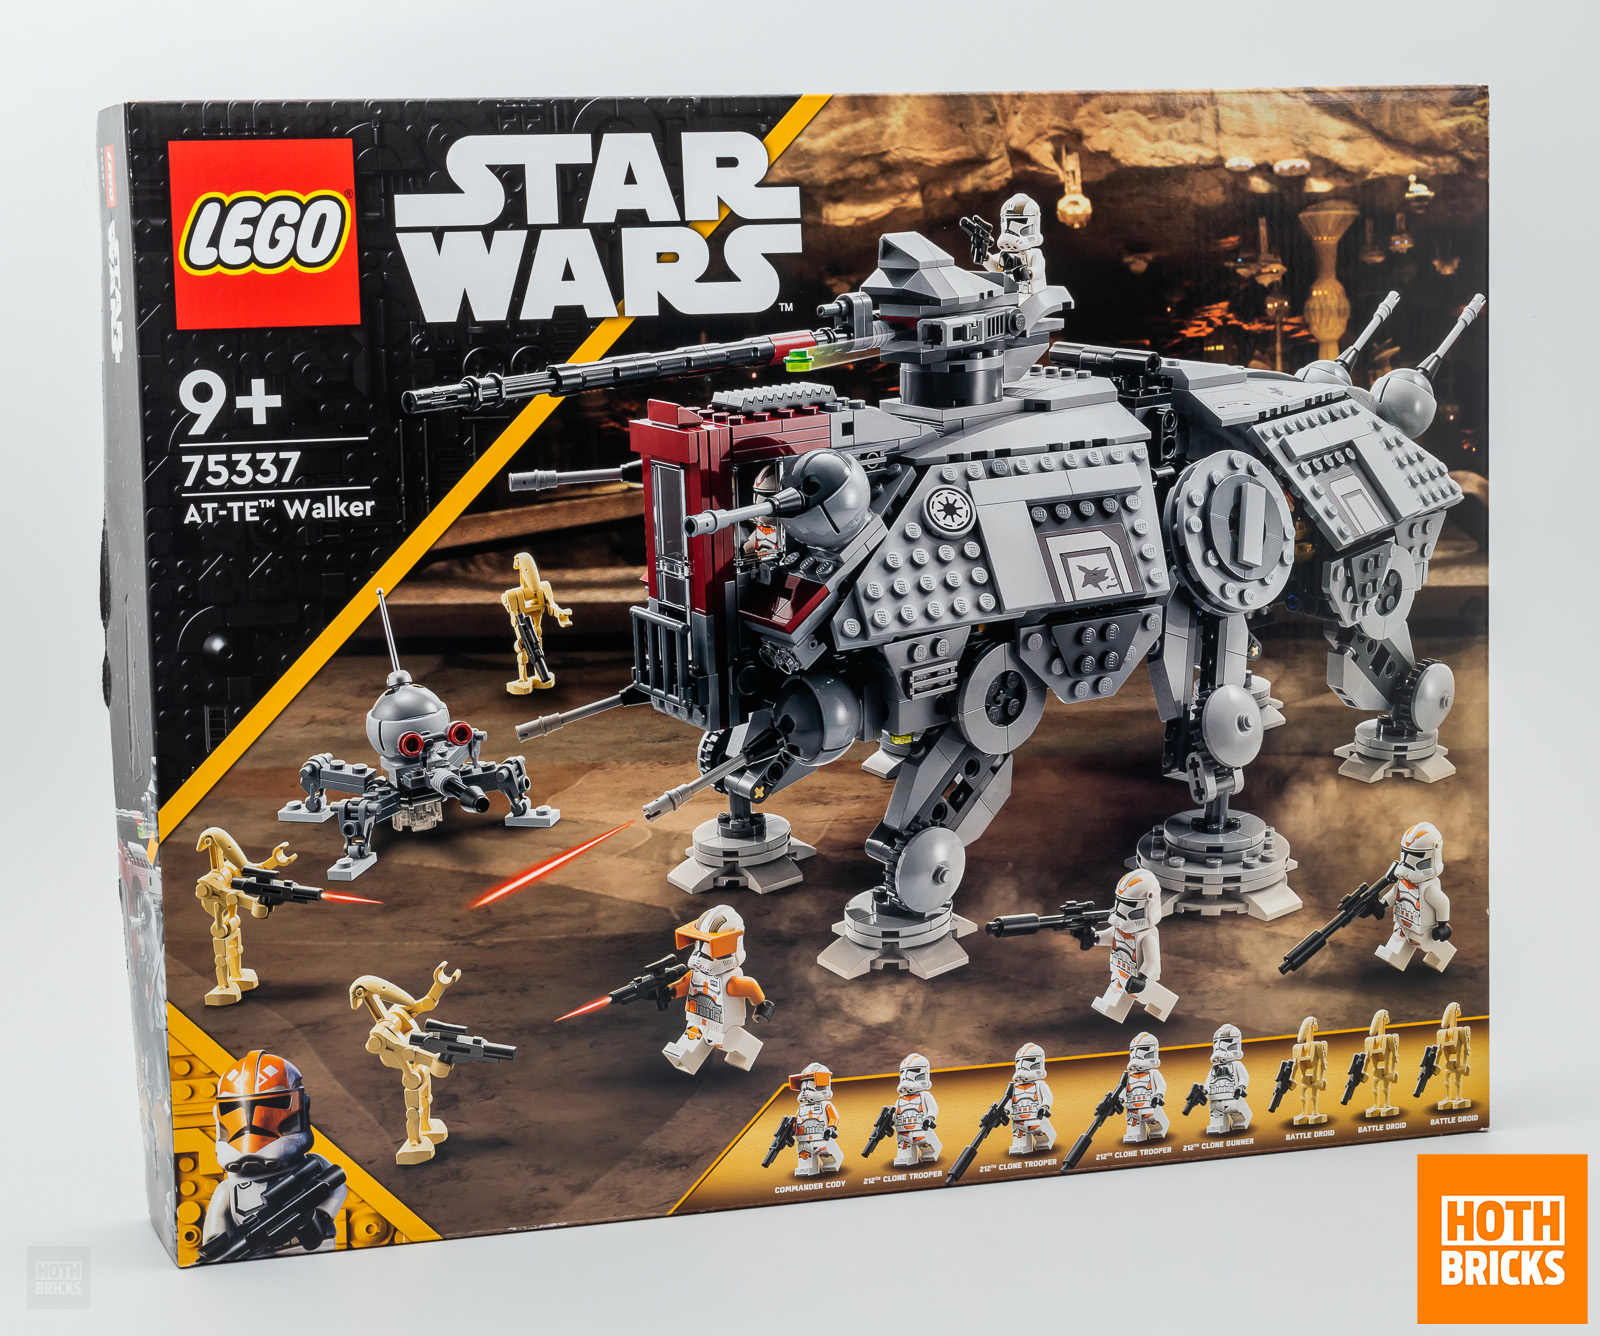 Състезание: Копие от комплекта LEGO Star Wars 75337 AT-TE Walker ще бъде спечелено!